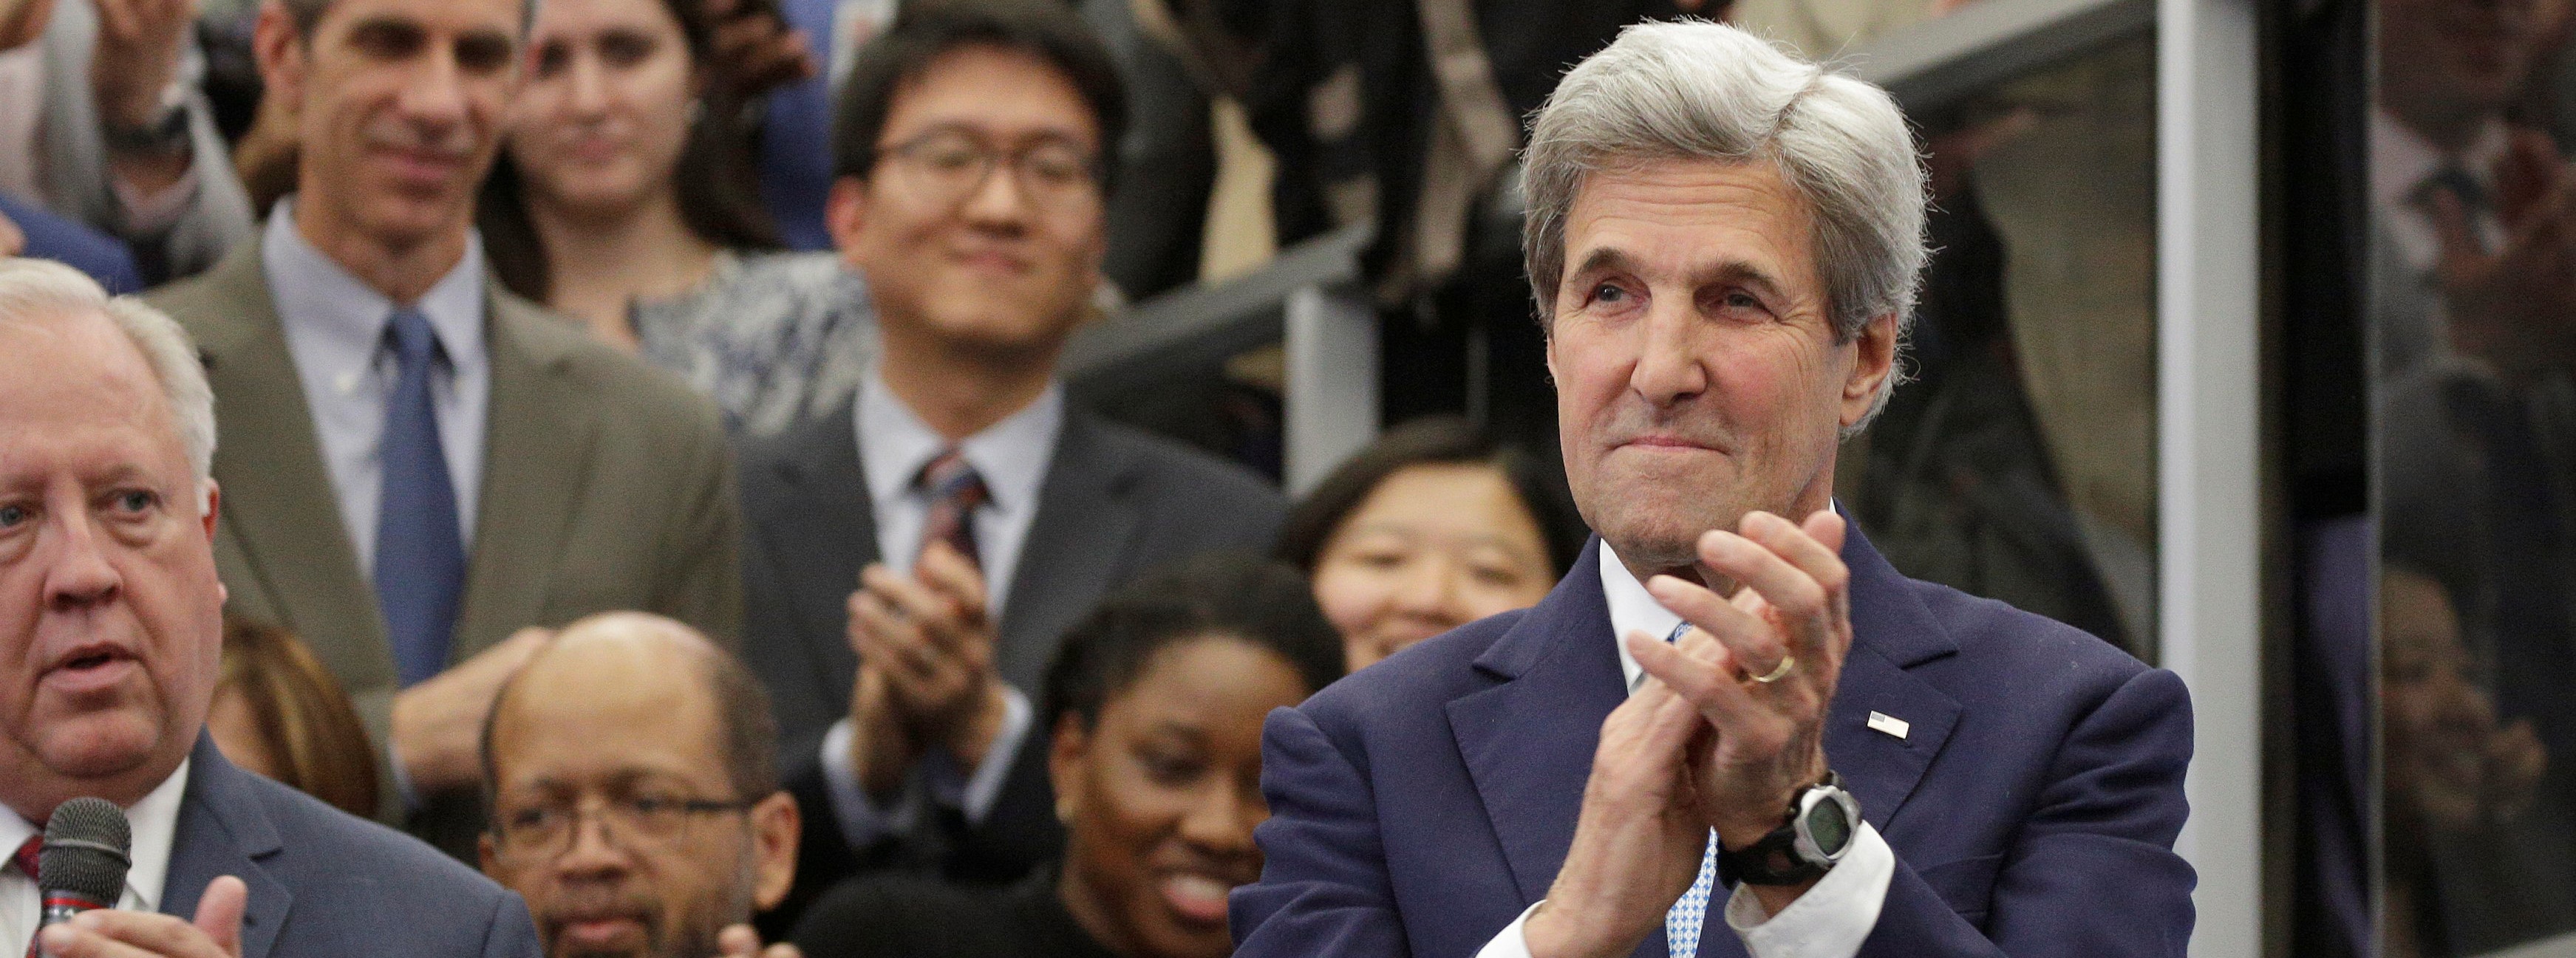 John Kerry to teach seminar at Yale University